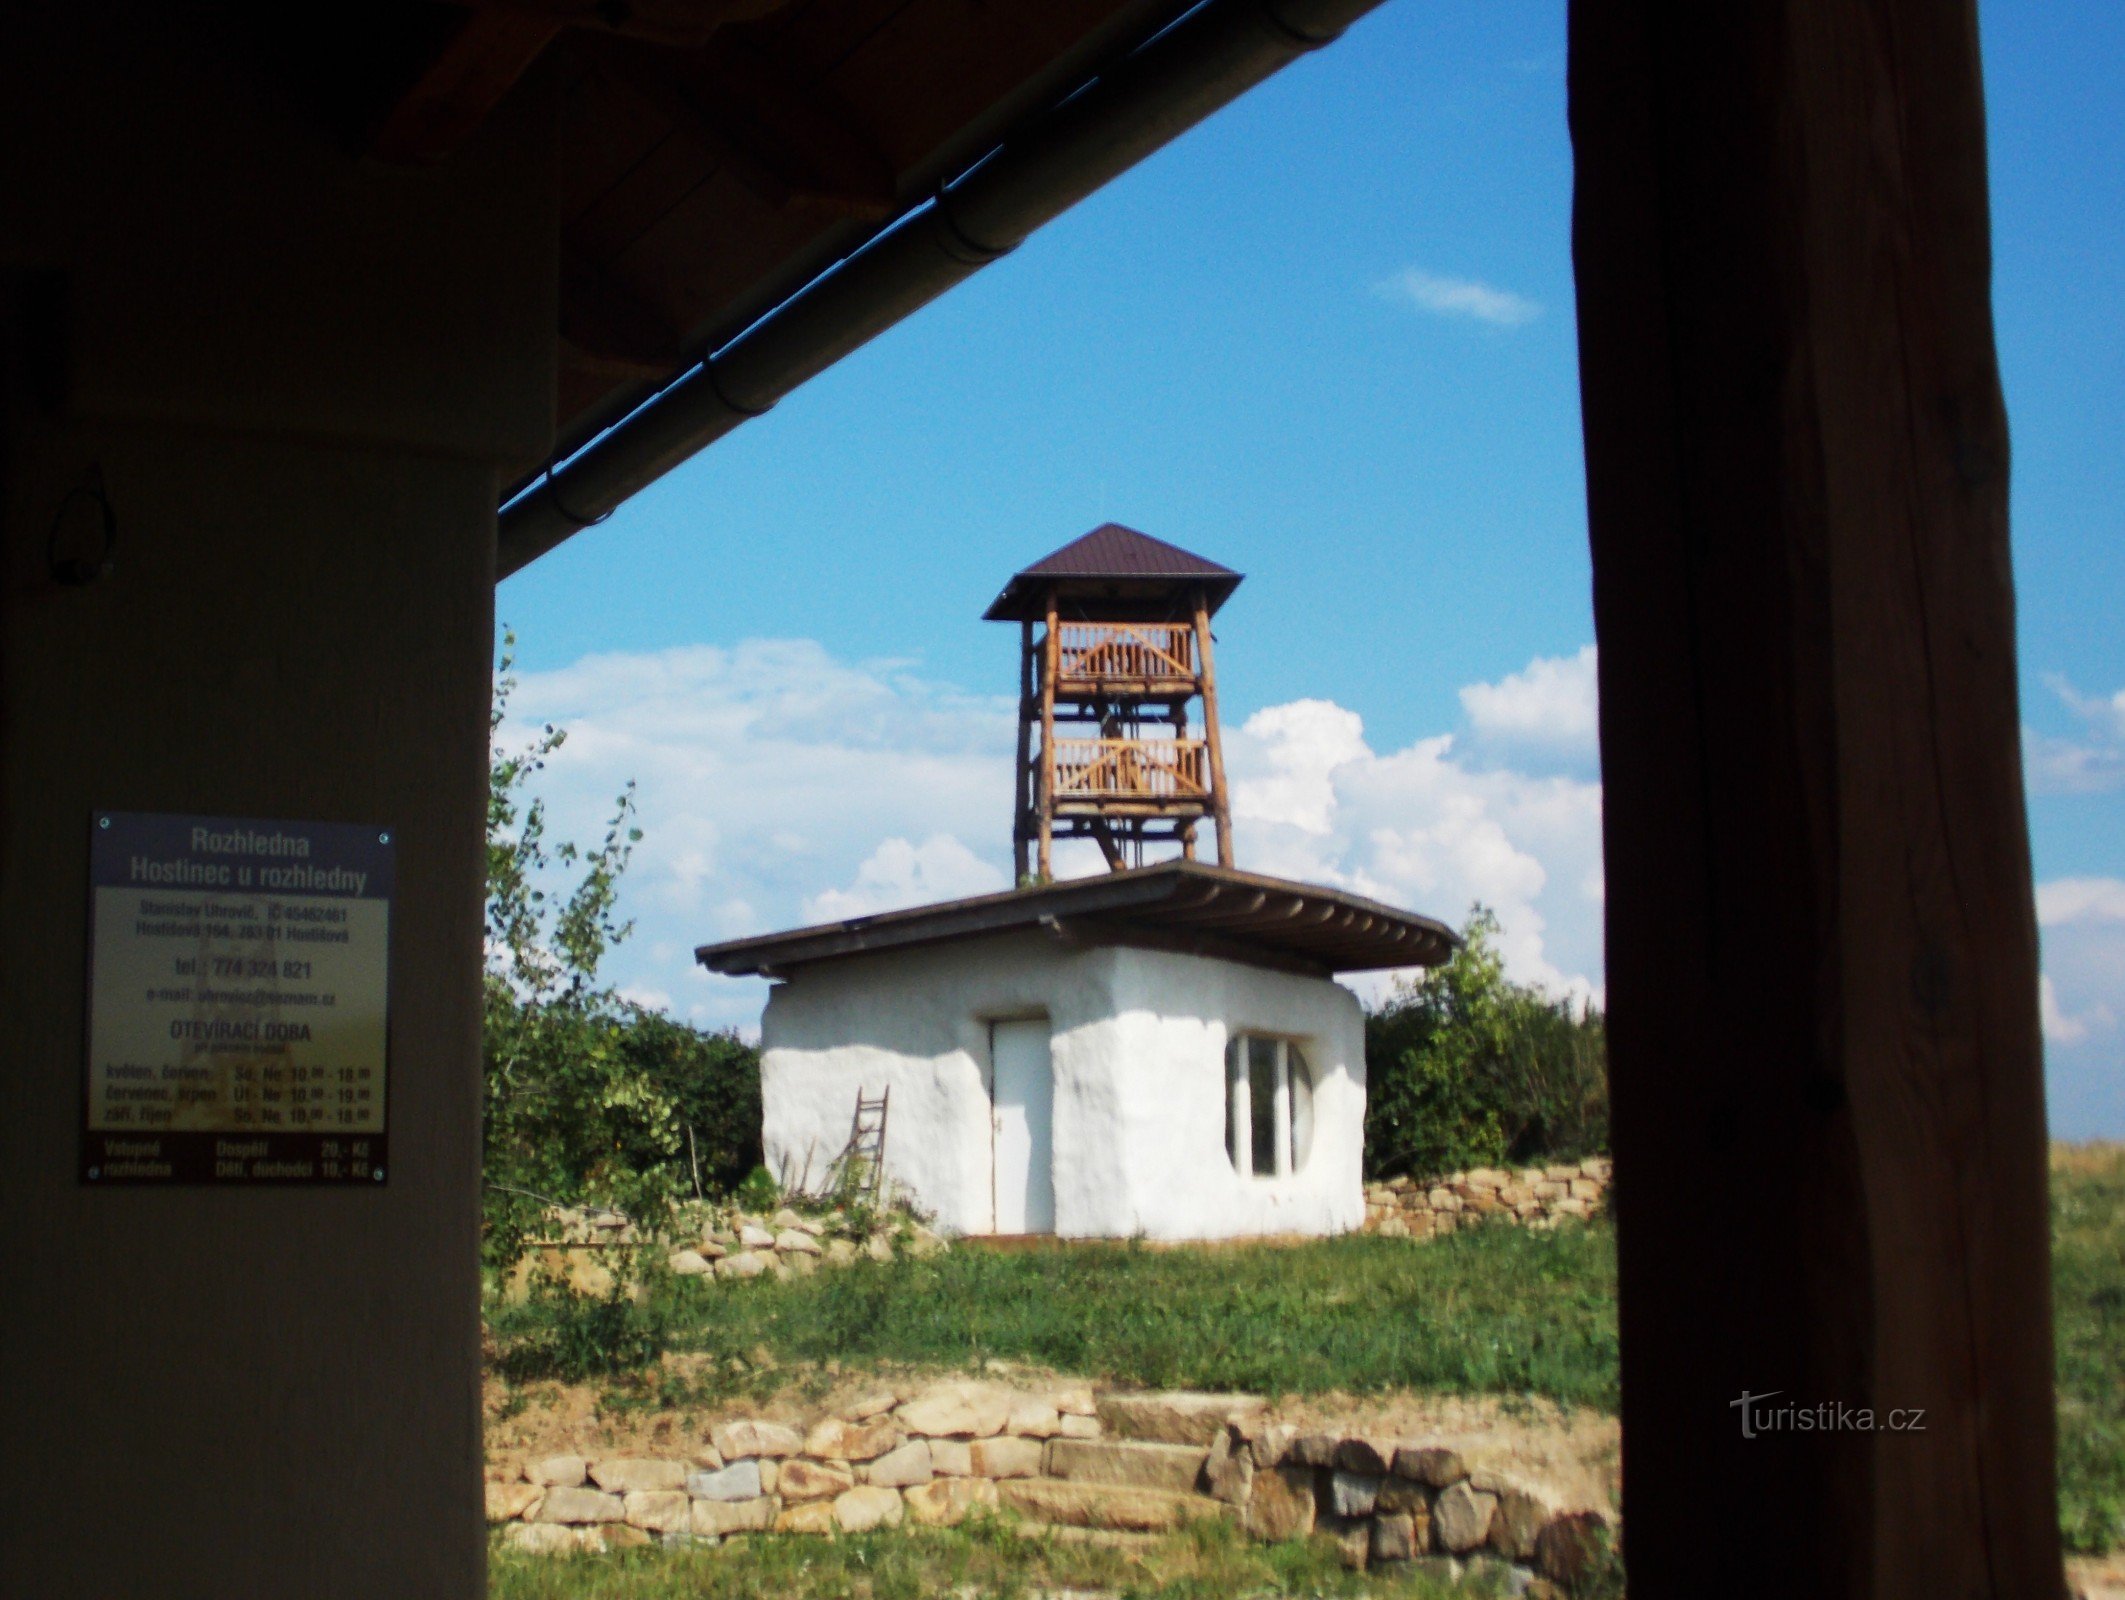 Pub de călătorie lângă turnul de observație de pe Hostišová